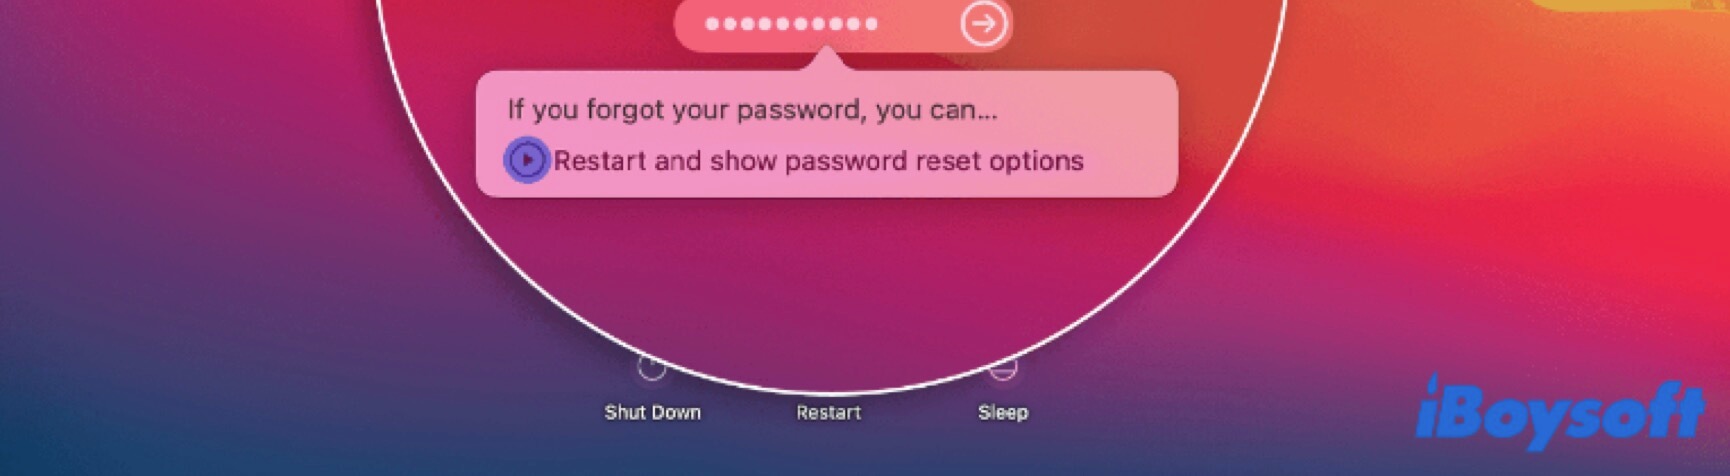 Mac neustarten und Passwort-Reset-Optionen anzeigen